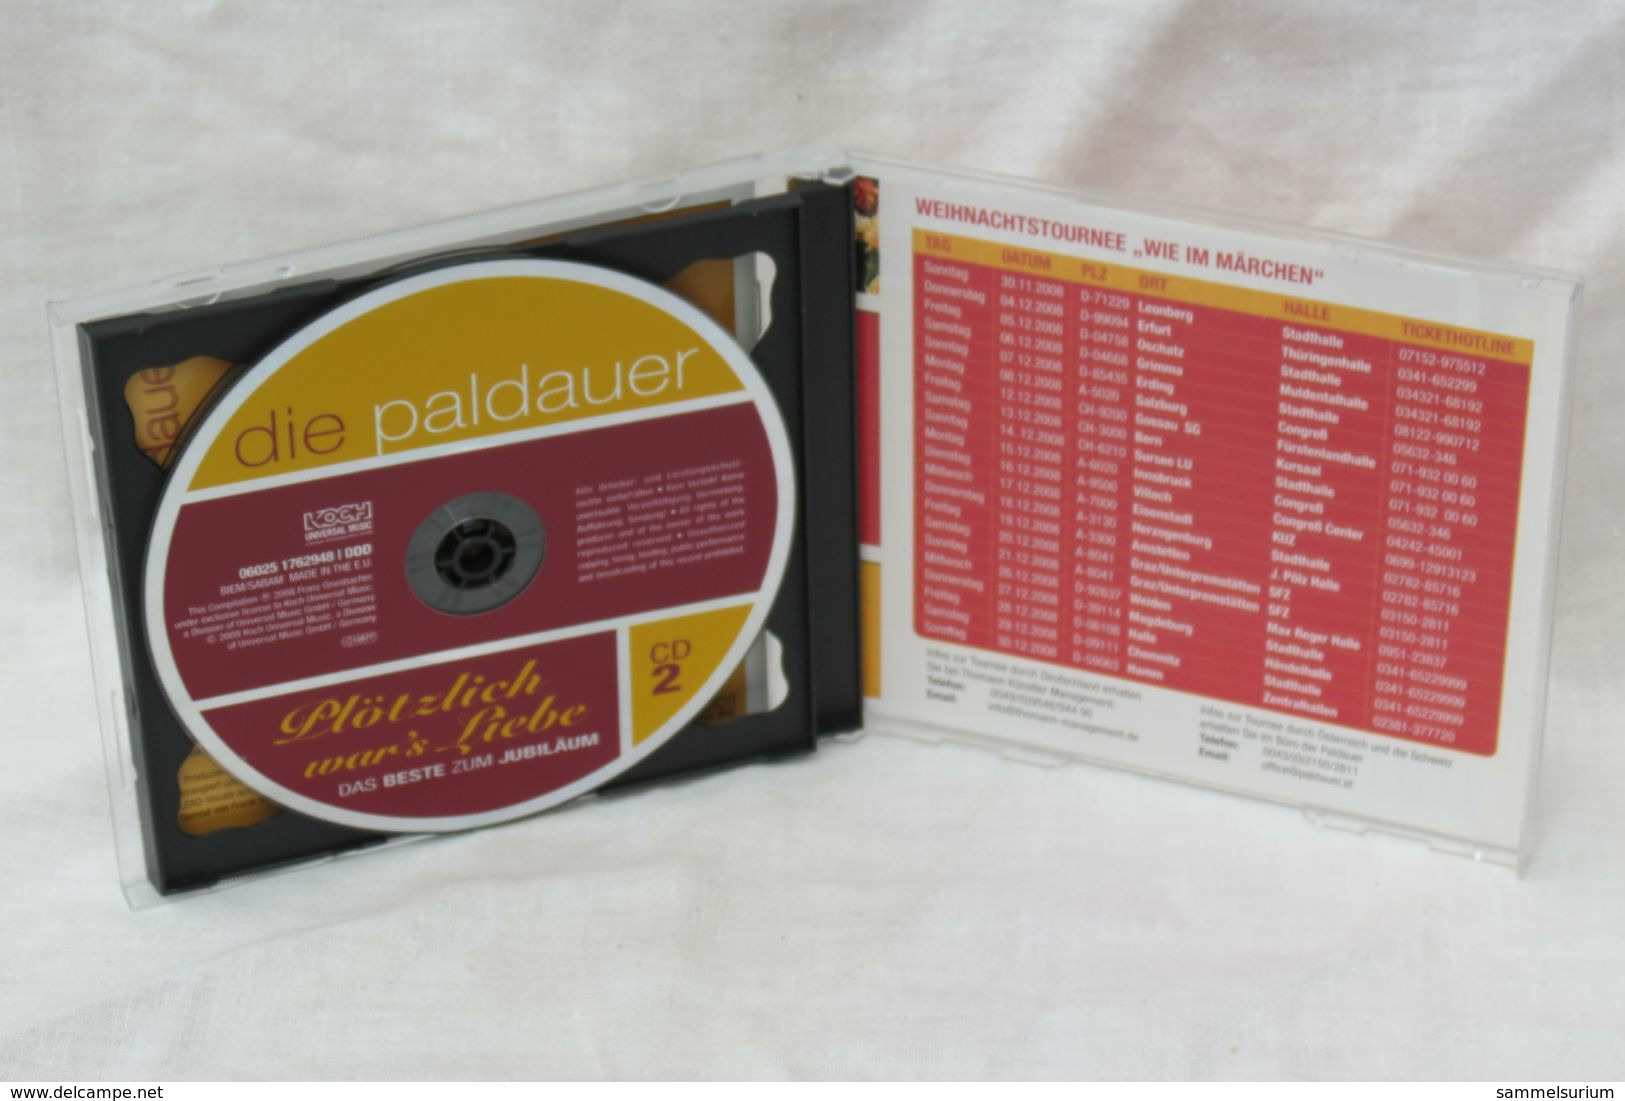 2 CDs "Die Paldauer" Plötzlich War's Liebe, Das Beste Zum Jubiläum - Other - German Music